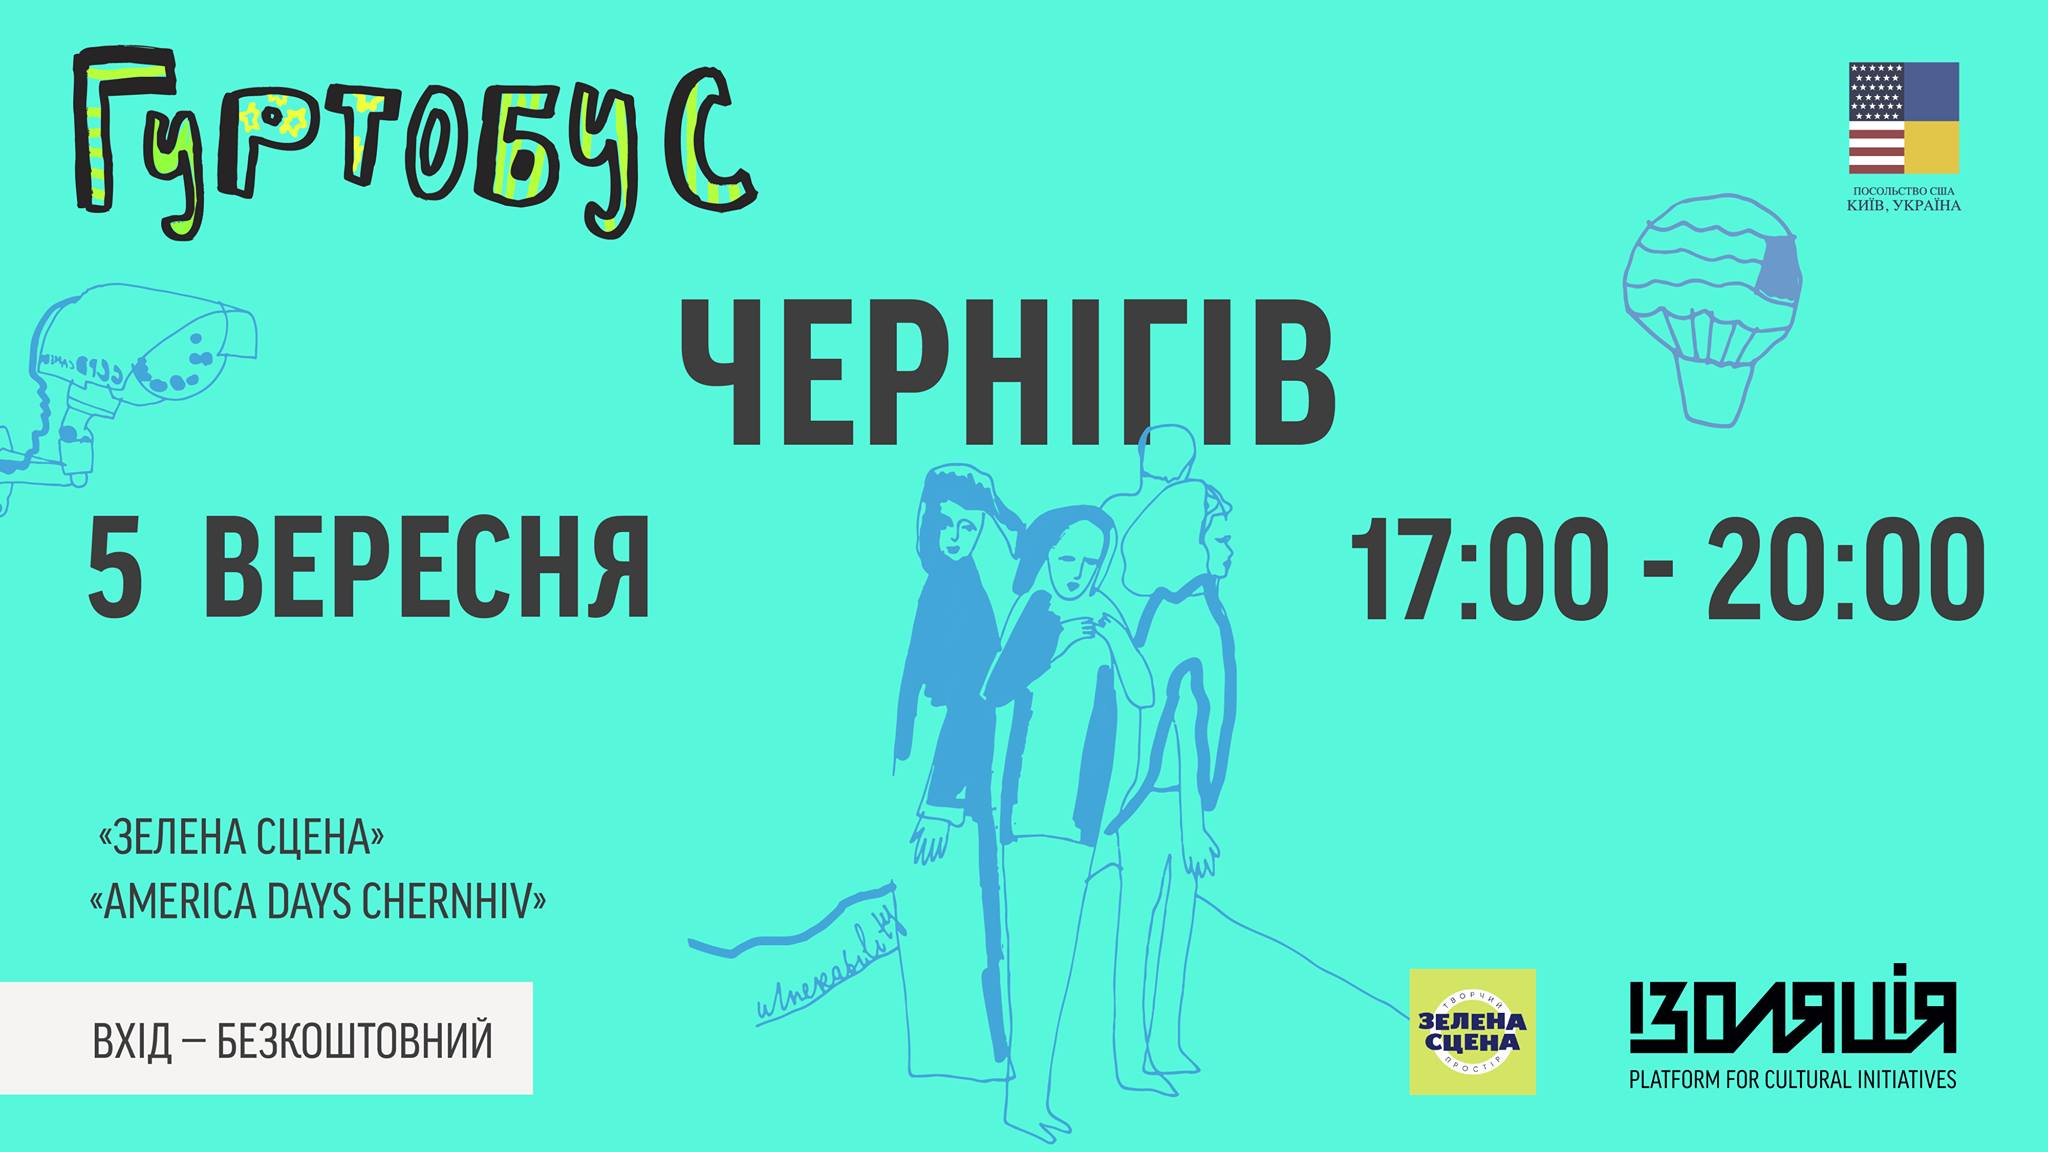 05.09 – Gurtobus in Chernigiv!